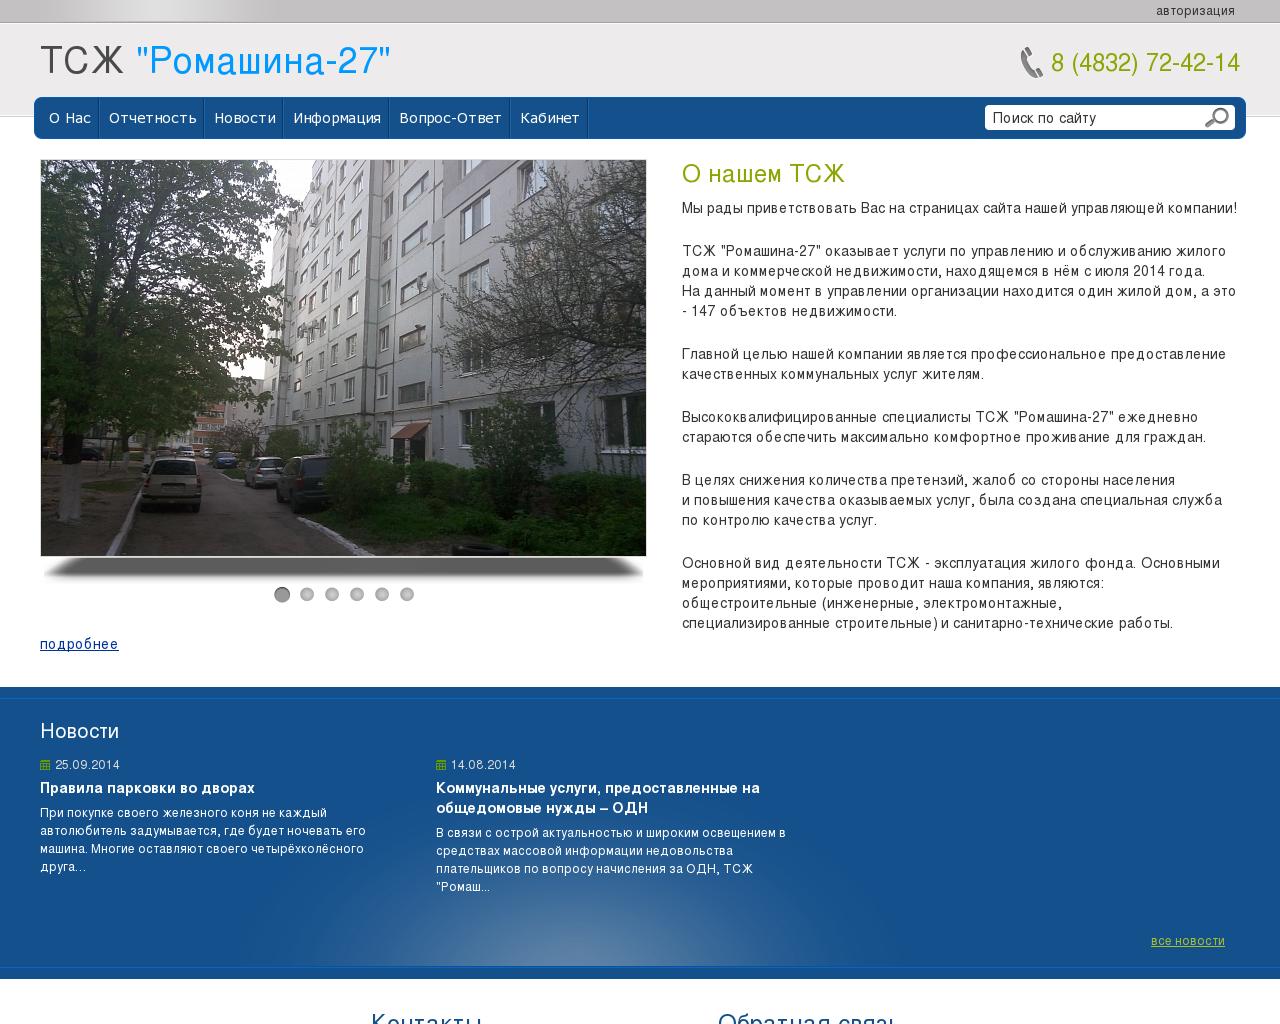 Изображение сайта r-27.ru в разрешении 1280x1024